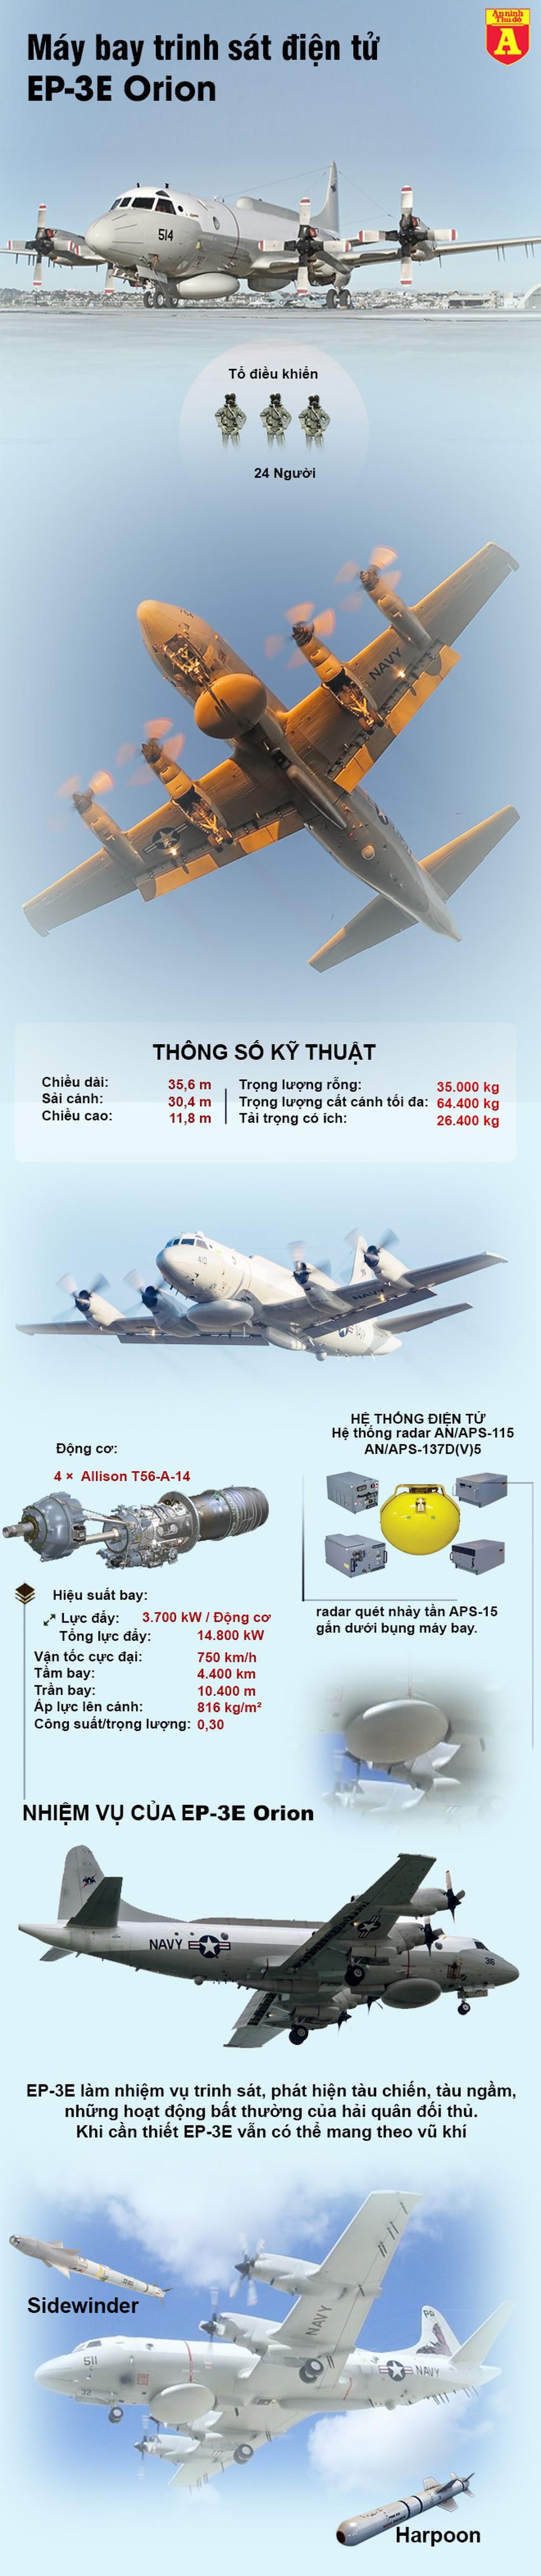 [Infographics] Trinh sát cơ Mỹ - Trung Quốc bất ngờ lướt qua mặt nhau gần Đài Loan  - Ảnh 1